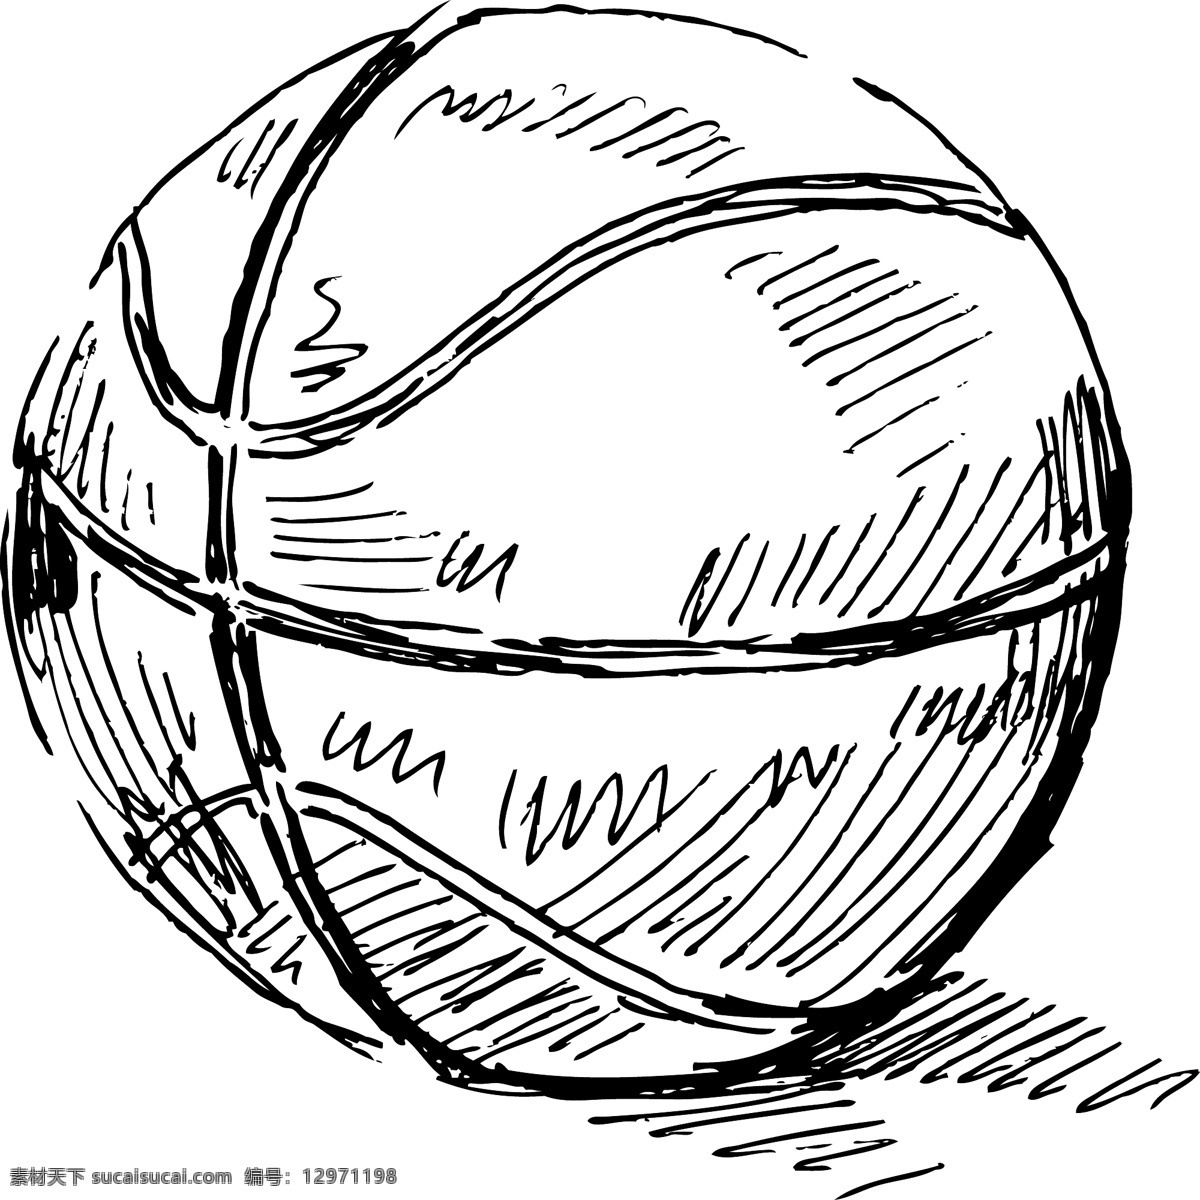 卡通 矢量 手绘 线 稿 篮球 商业 钢笔 插画 元素 线稿 创意设计 排版 排版设计 装饰图案